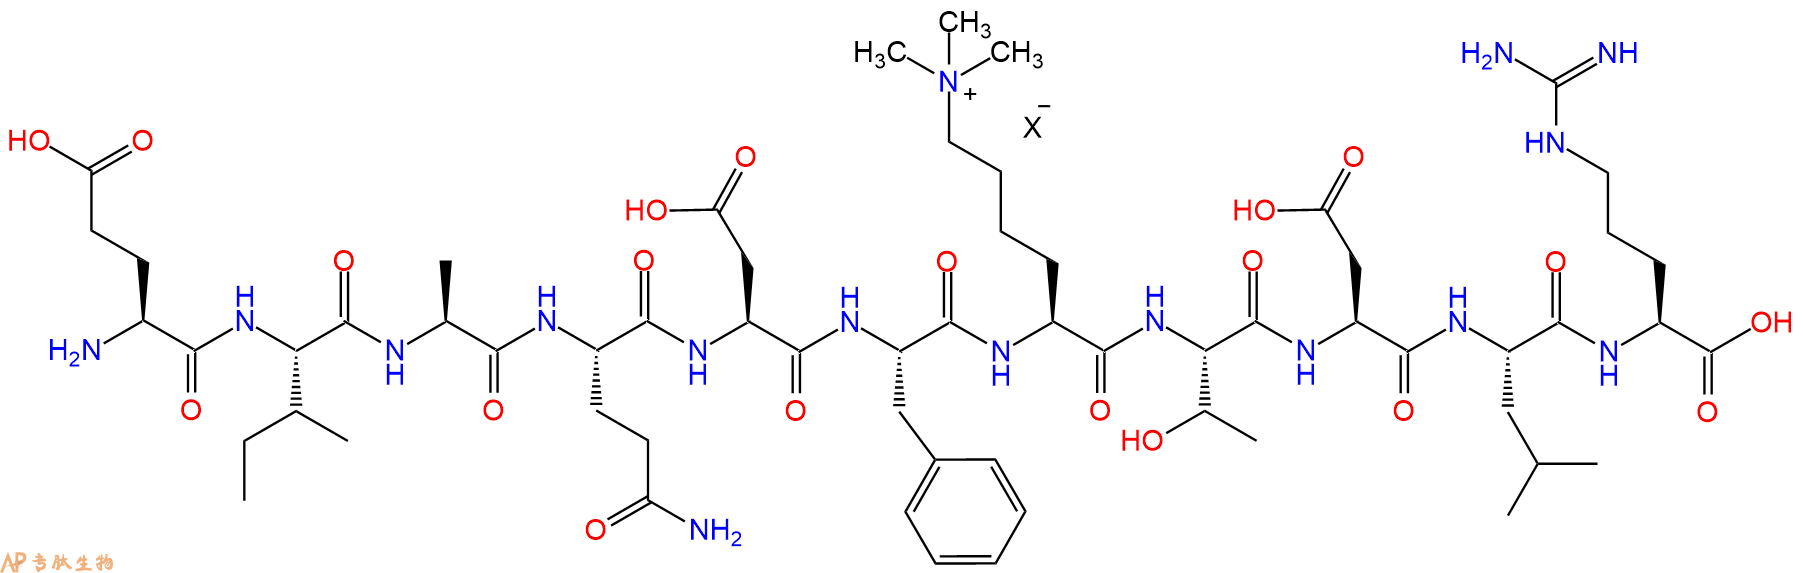 专肽生物产品组蛋白肽段[Lys(Me3)79]-Histone H3(73-83), H3K79(Me3)